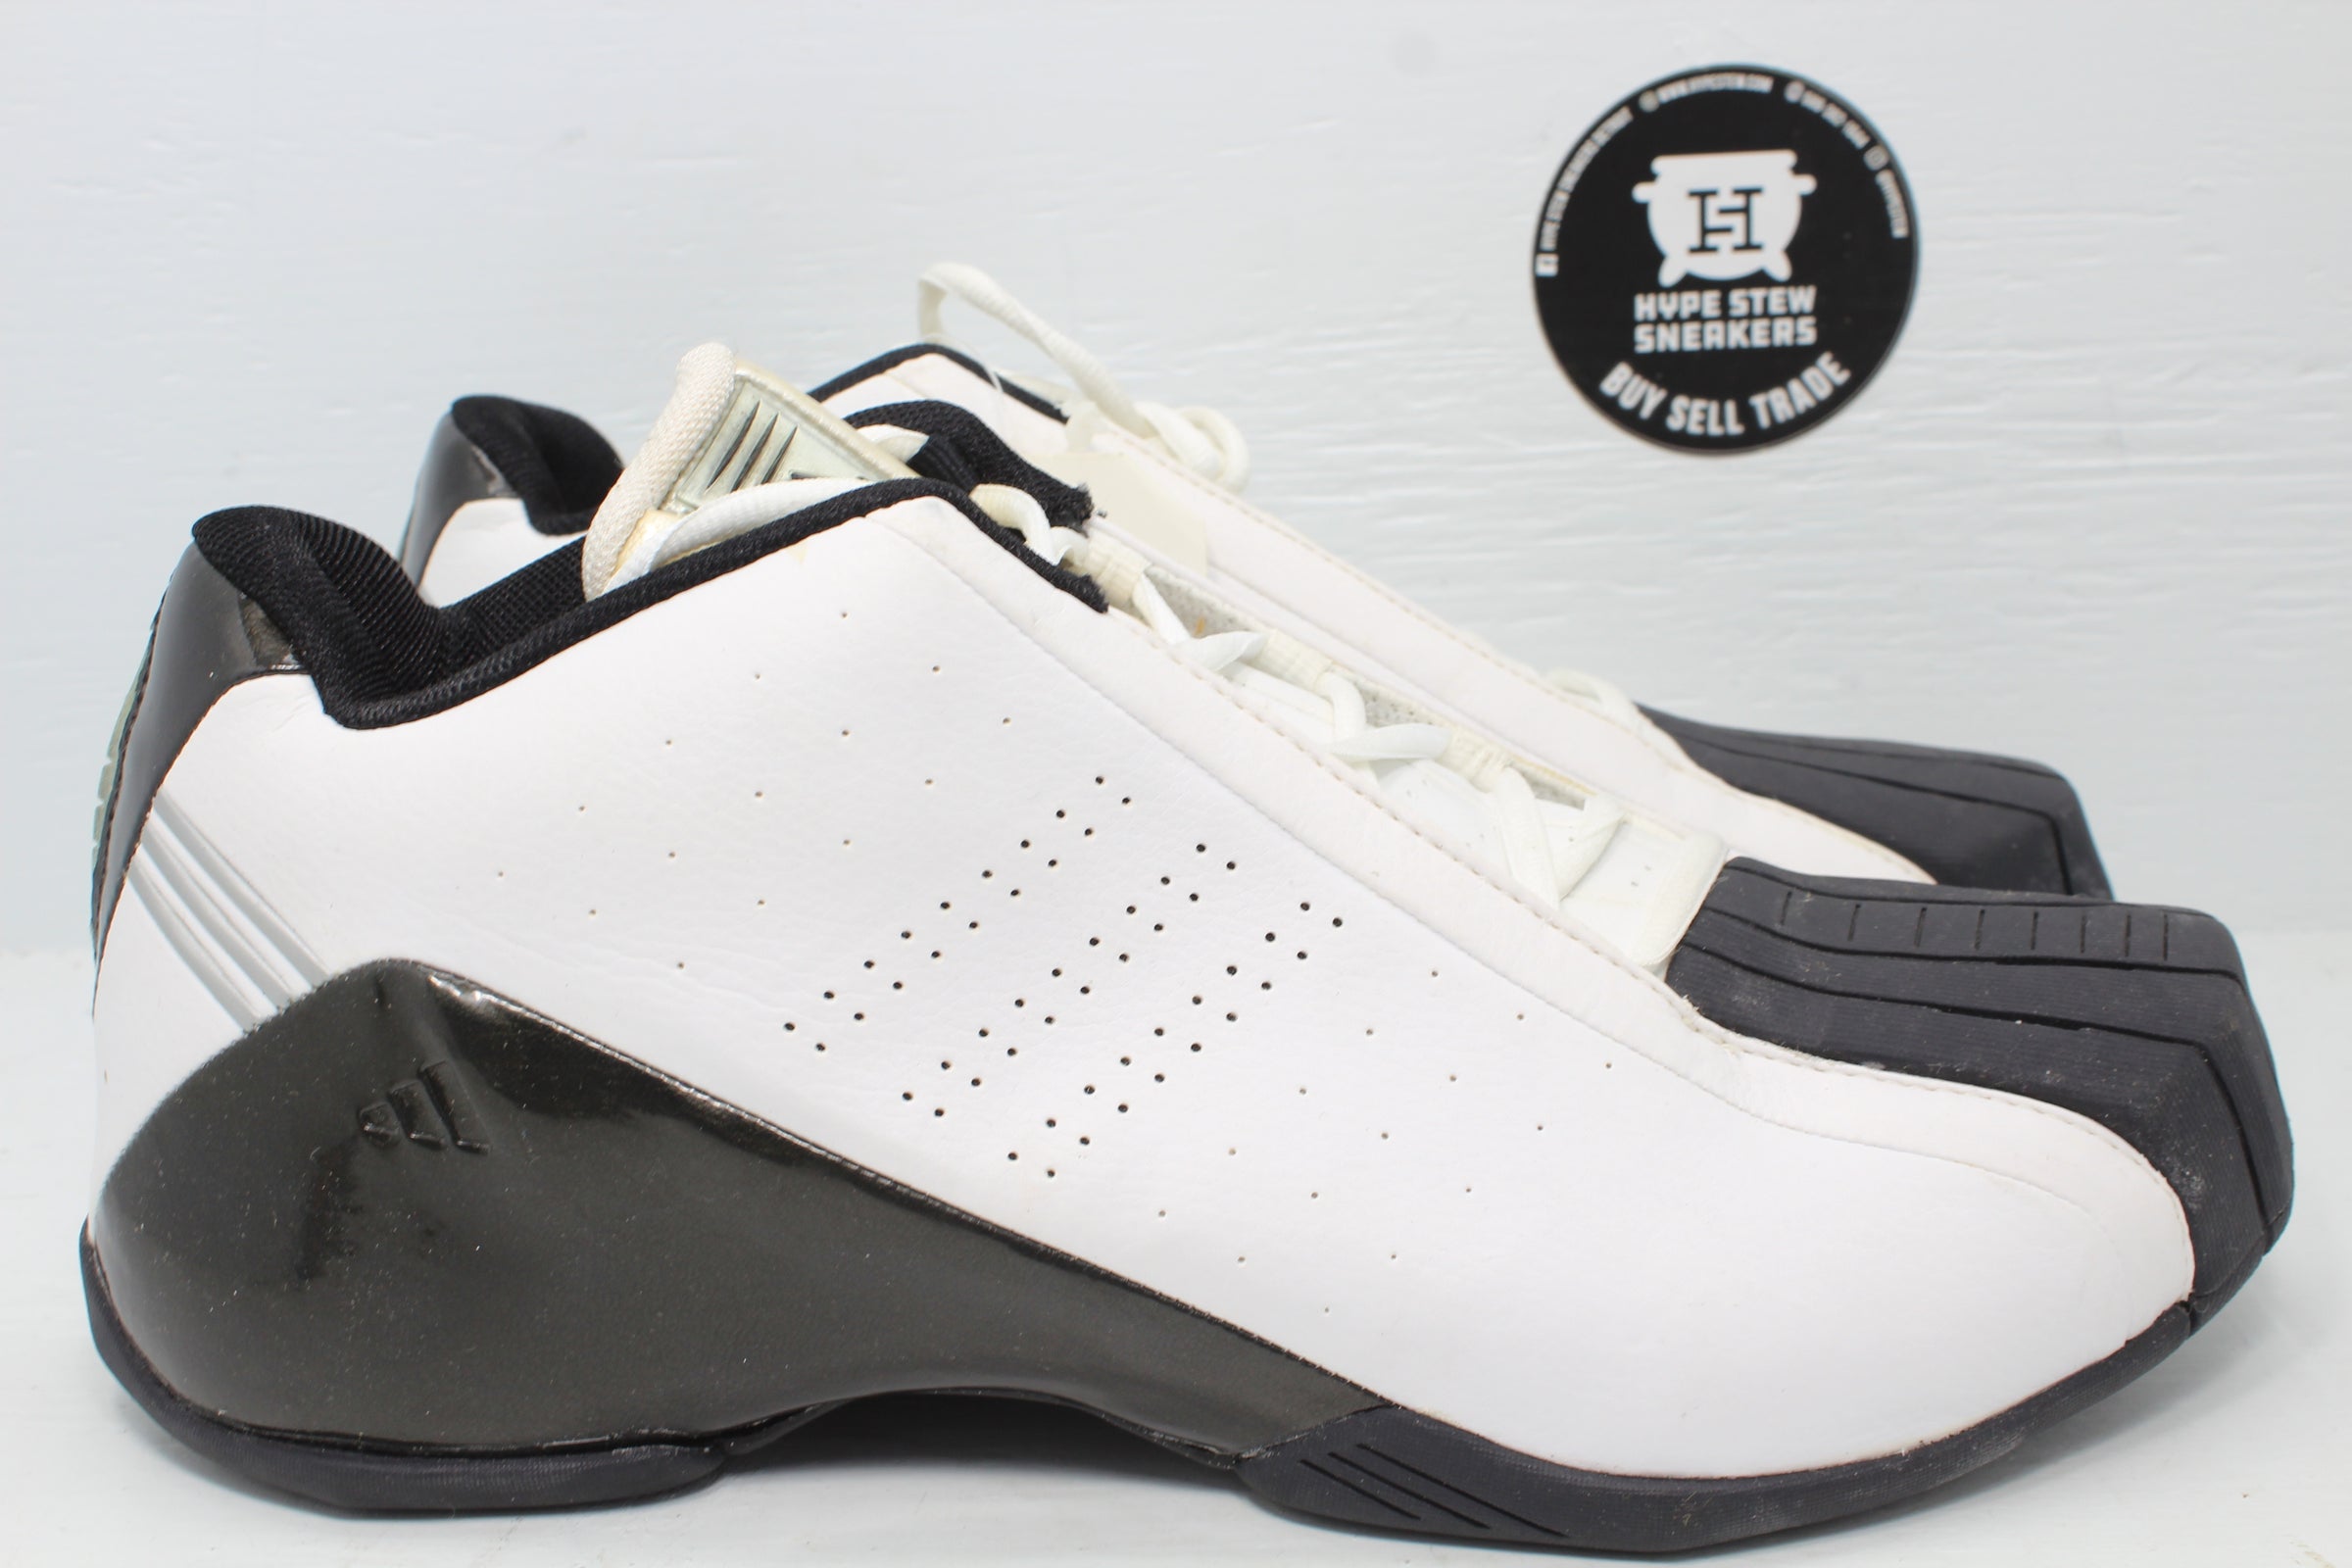 Peru heelal Bijdrager Adidas Players Ball Spurs Tim Duncan (2003) | Hype Stew Sneakers Detroit